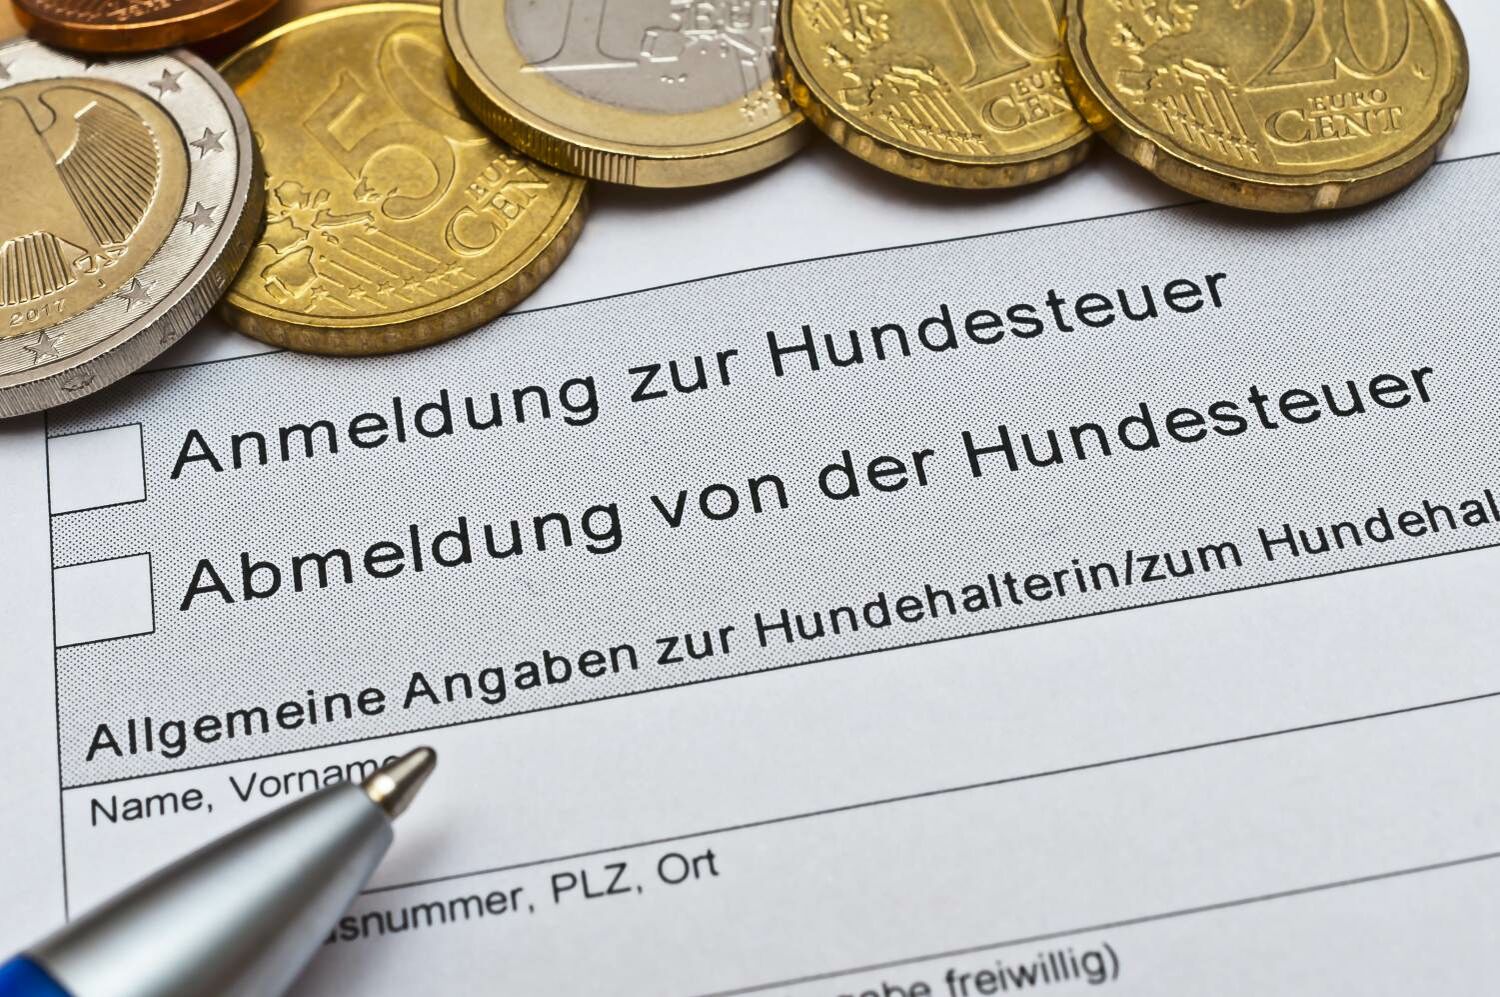 Auf einem Formular zur An- und Abmeldung für die Hundesteuer liegen einige Euro-Münzen.